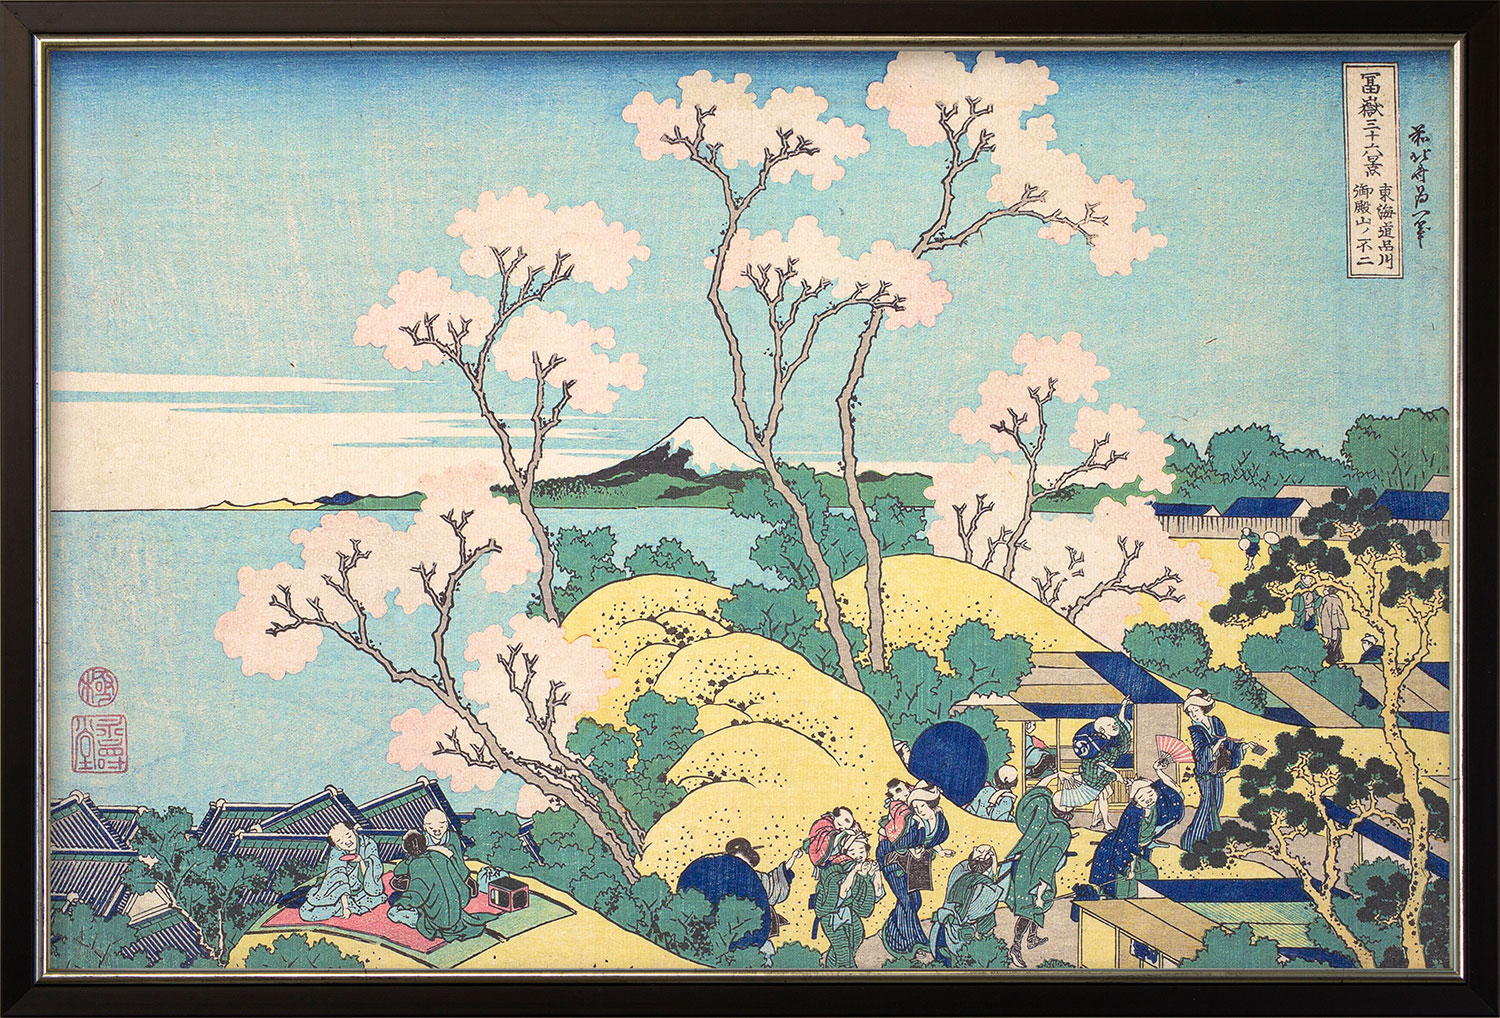 Katsushika Hokusai: Bild 'Der Fuji von Gotenyama in Shinangawa von der Handelsstraße Tokaido aus' (um 1830-32), gerahmt